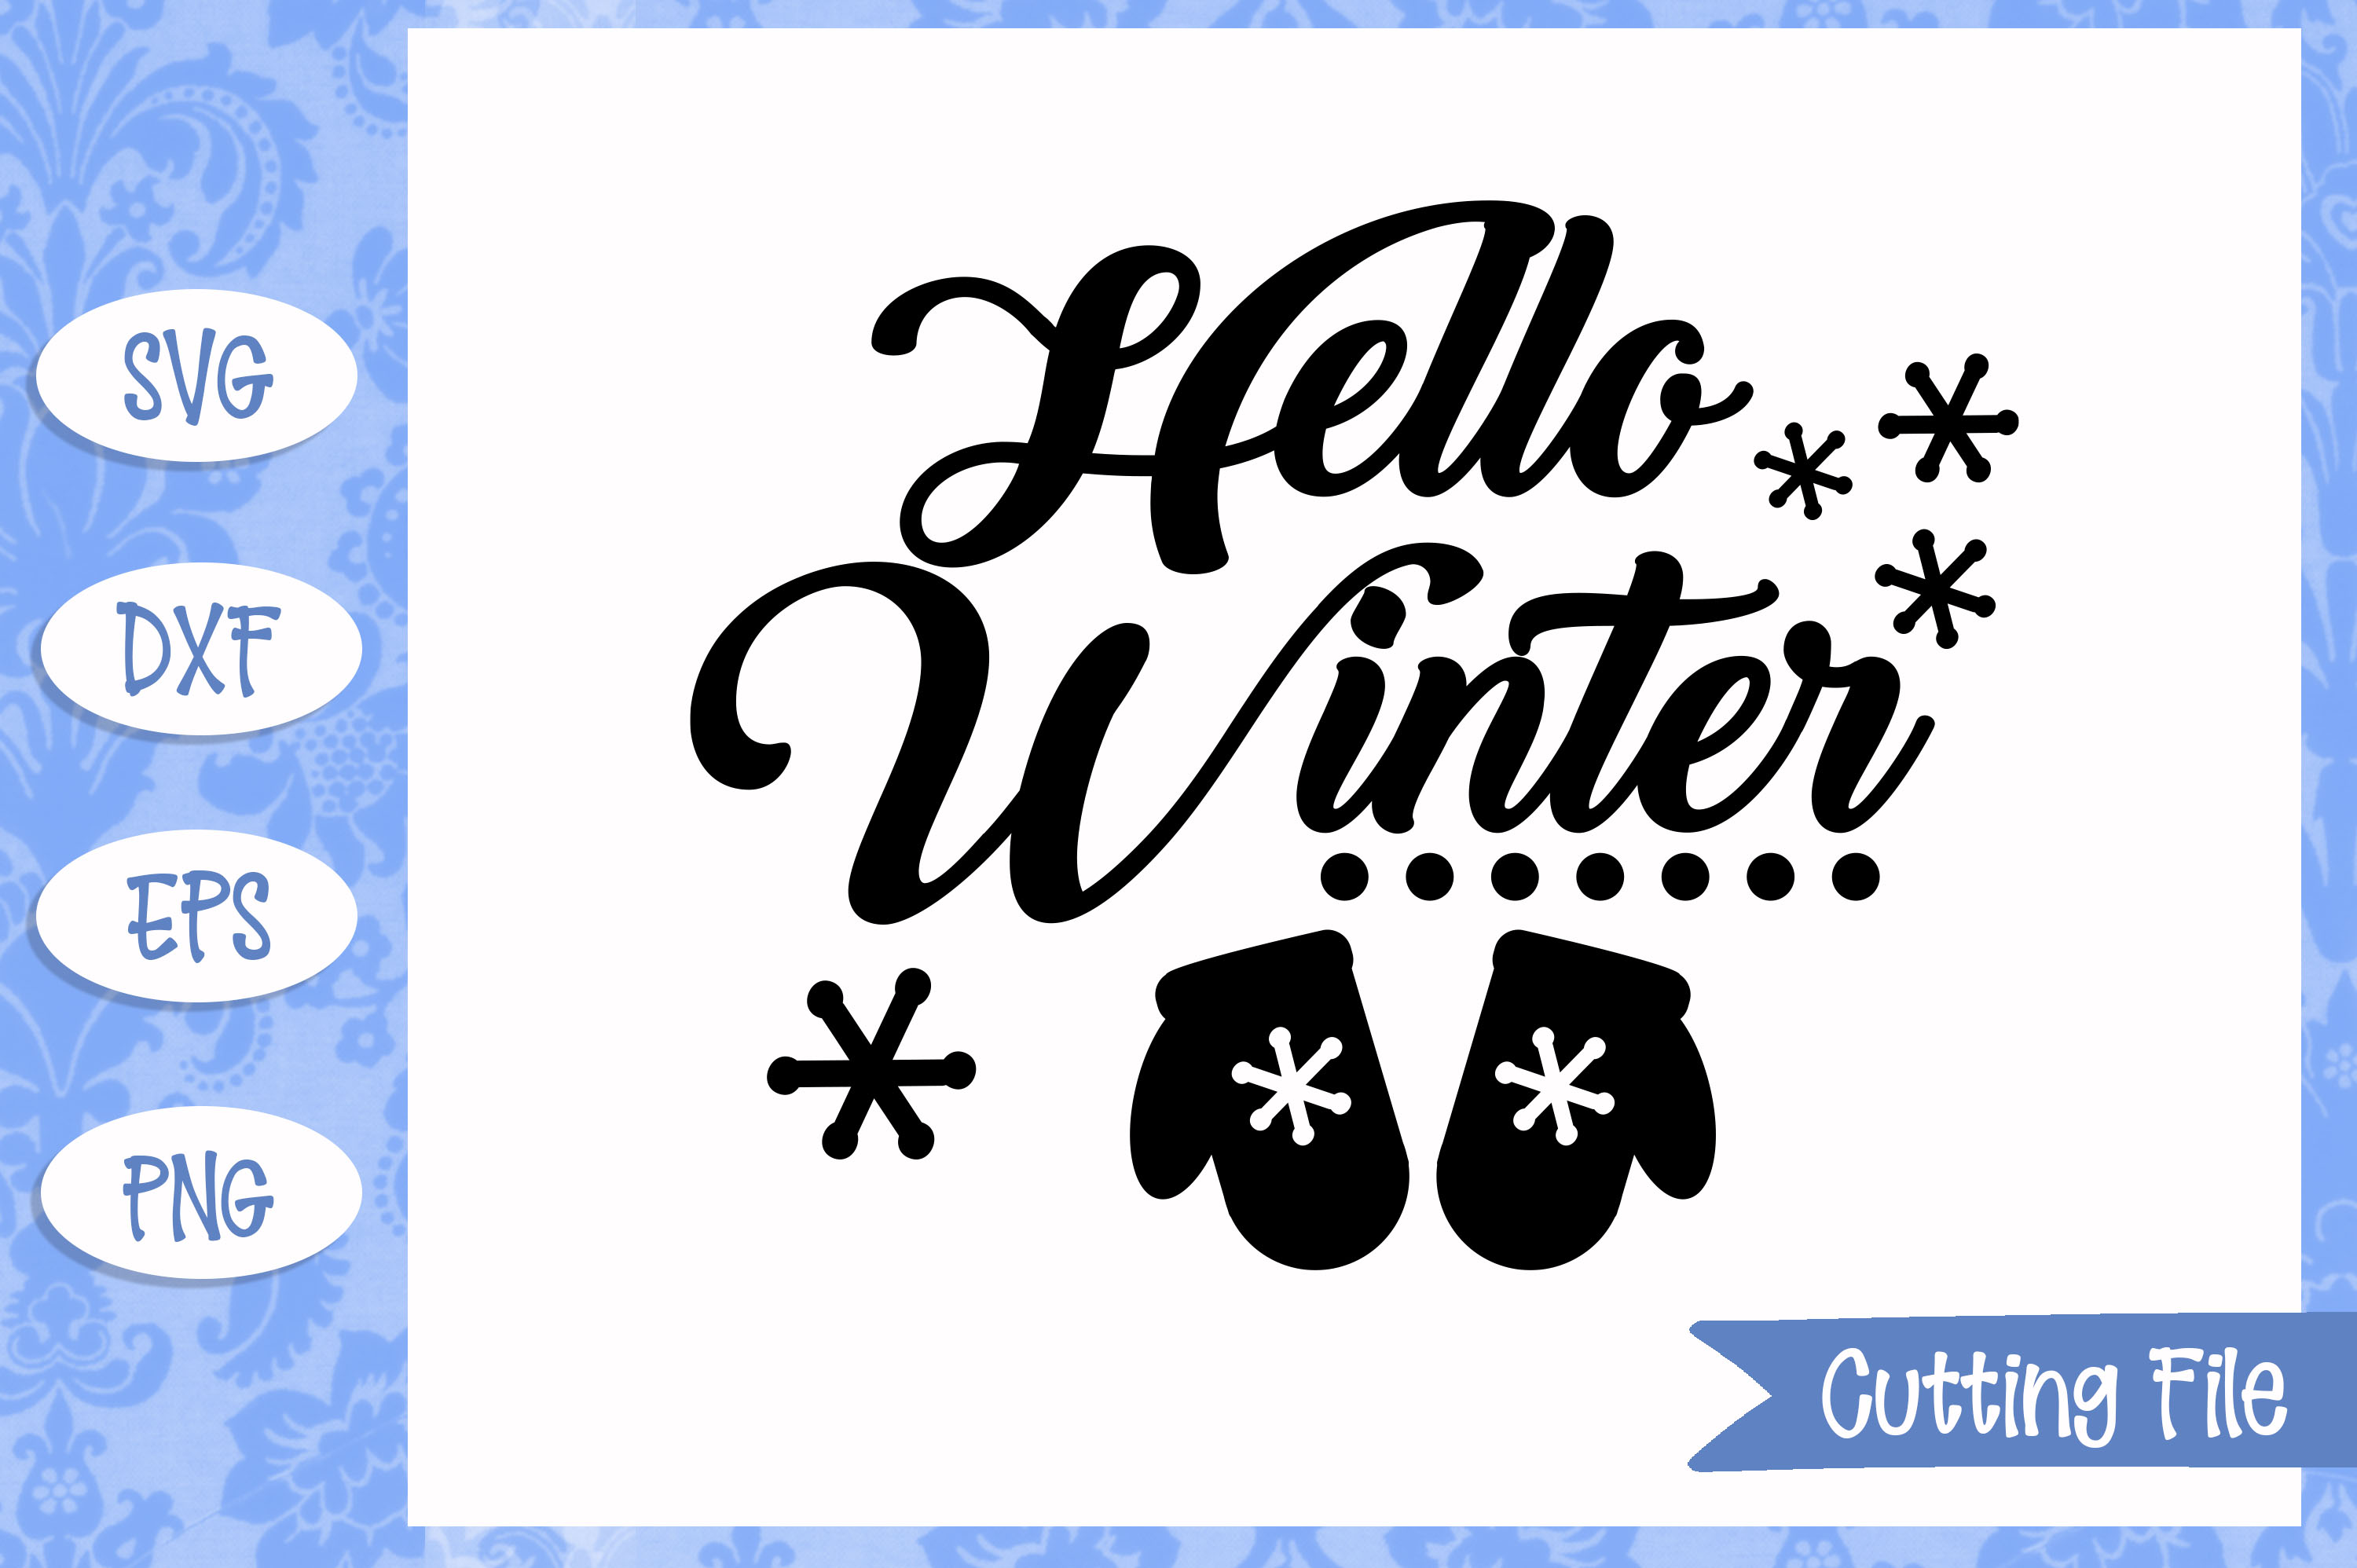 Download Hello winter SVG File